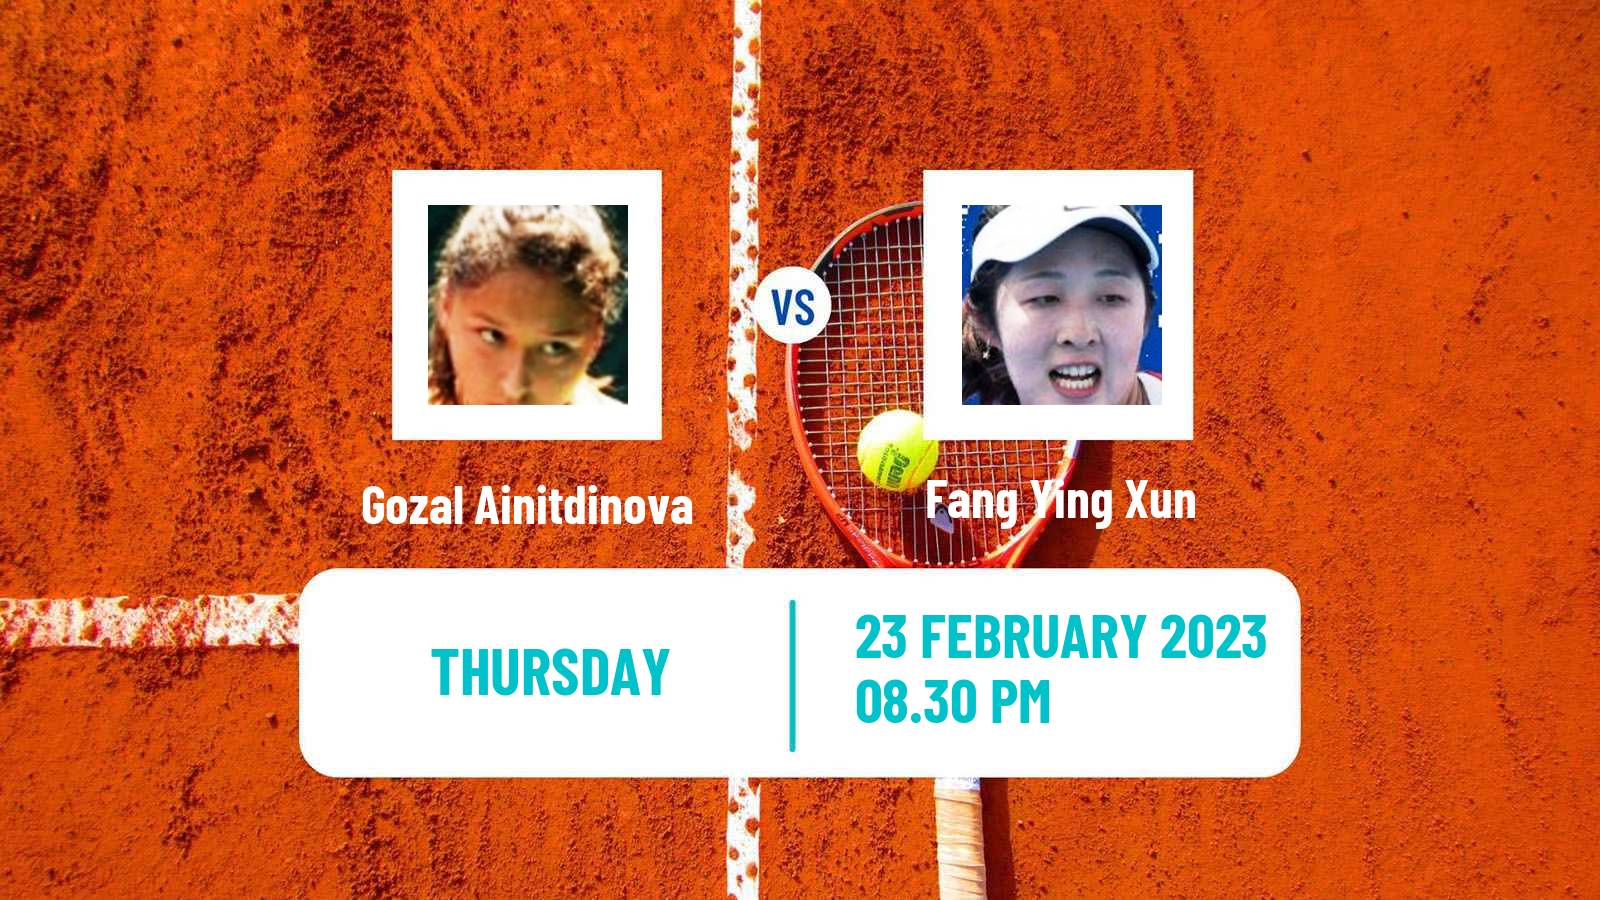 Tennis ITF Tournaments Gozal Ainitdinova - Fang Ying Xun